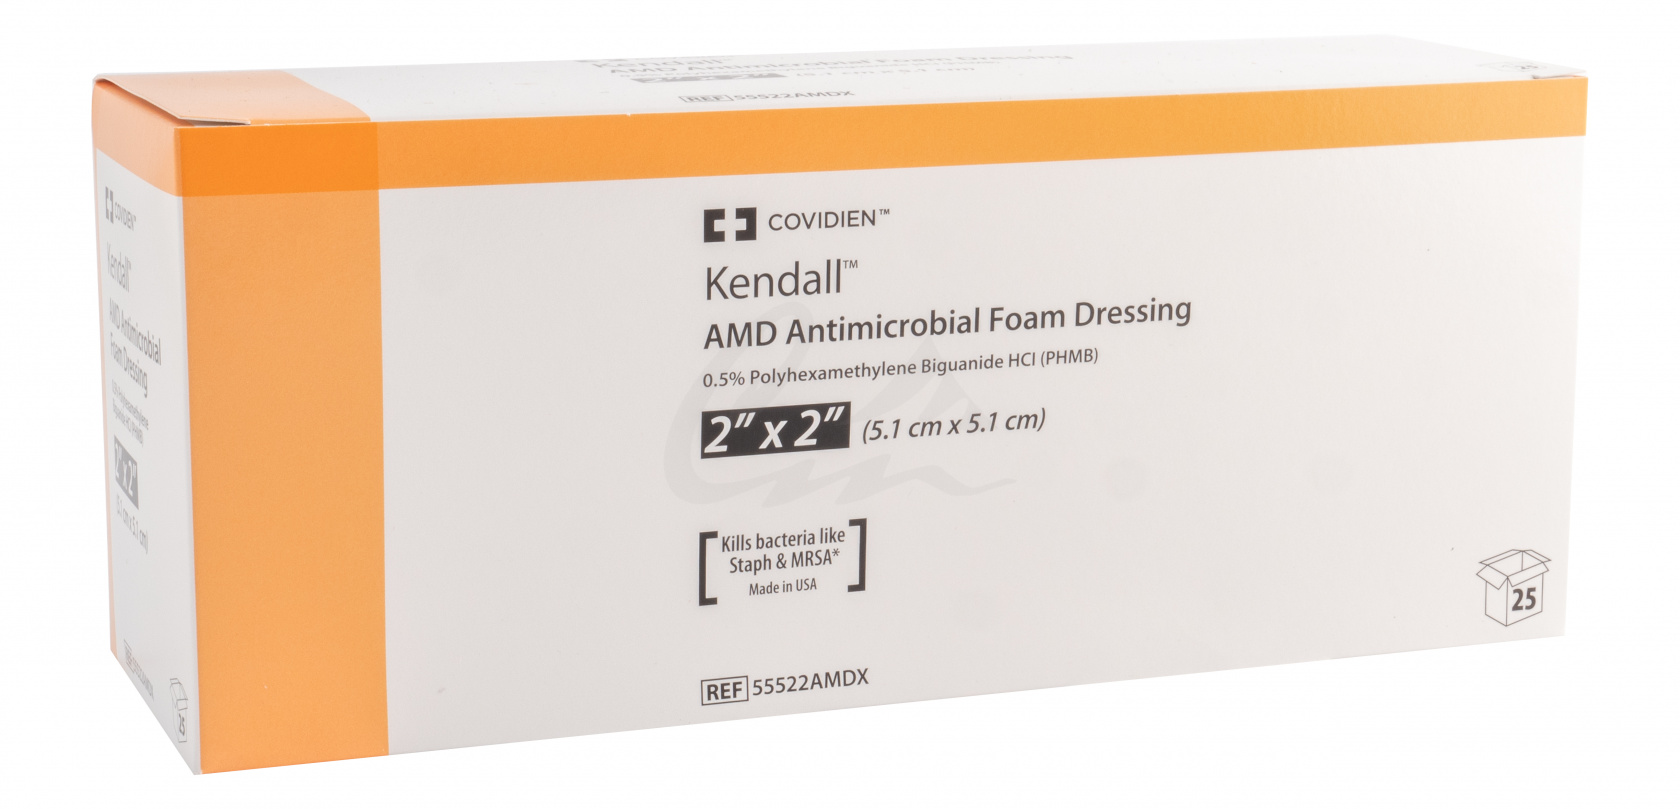 Foam Dressing AMD Kendall 5cm x5cm image 0